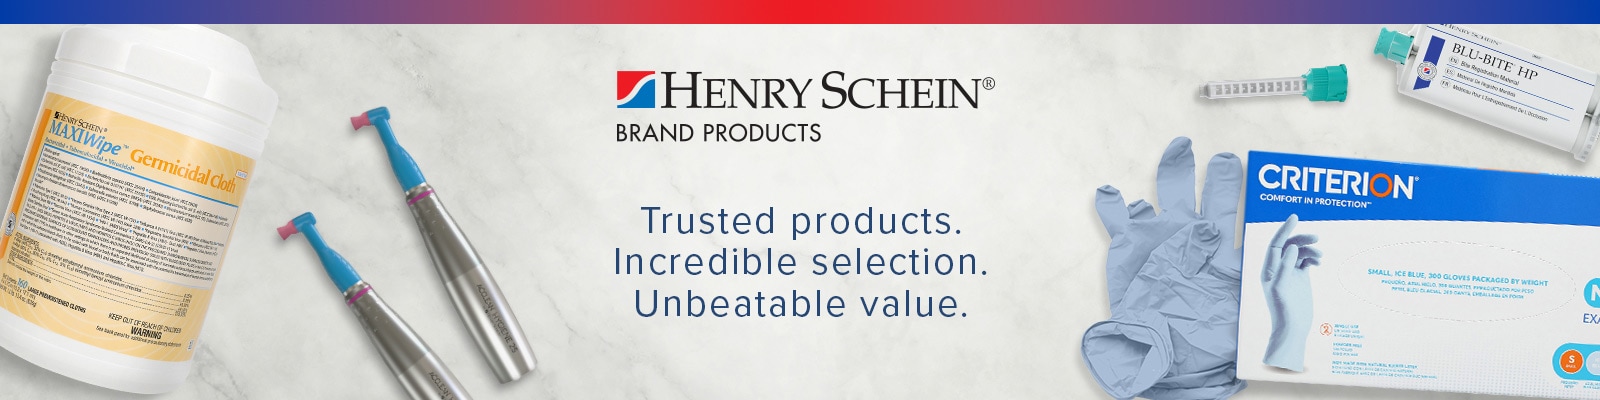 Henry Schein Brand